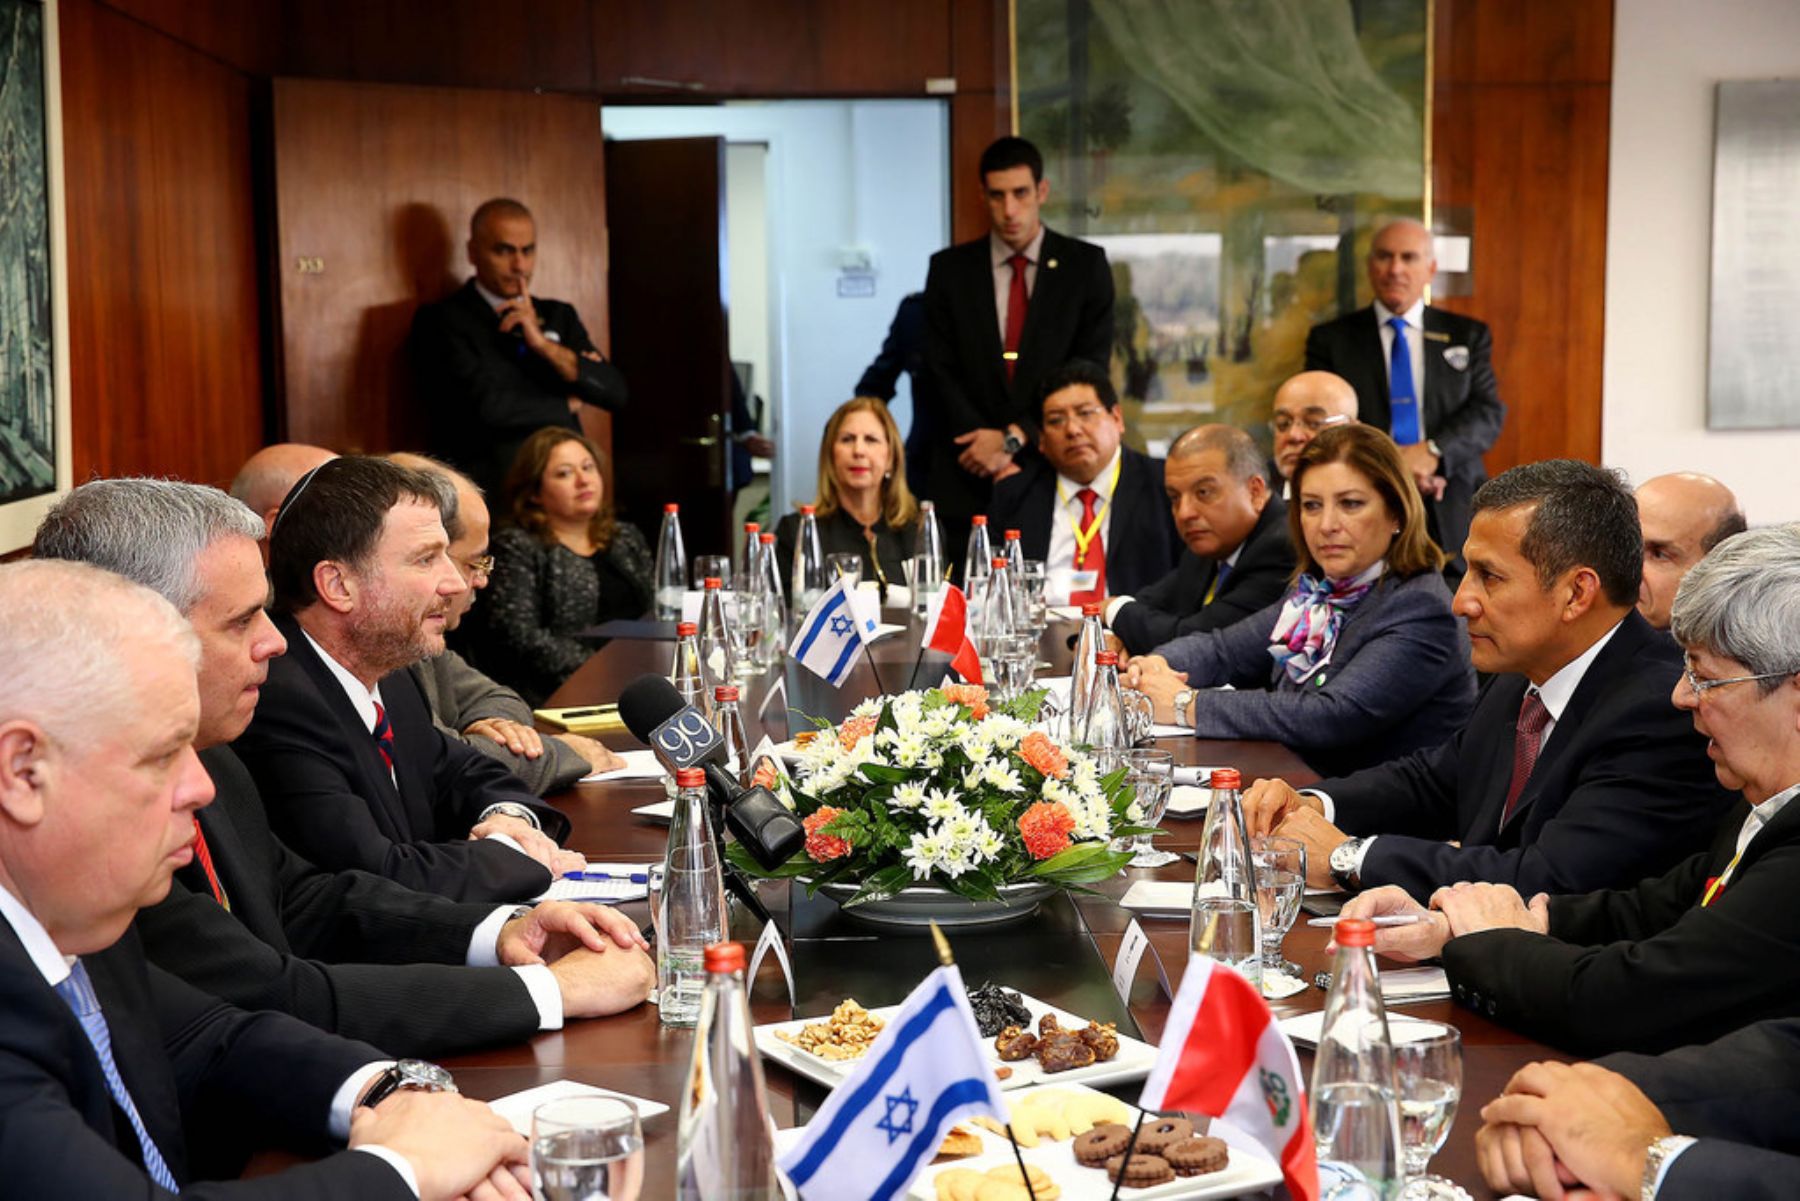 Reunión con el titular del Parlamento de Israel (Knesset), Yuli-Yoel Edelstein, sostuvo el presidente Ollanta Humala en el marco de su visita oficial a Israel. Foto: ANDINA/Presidencia.